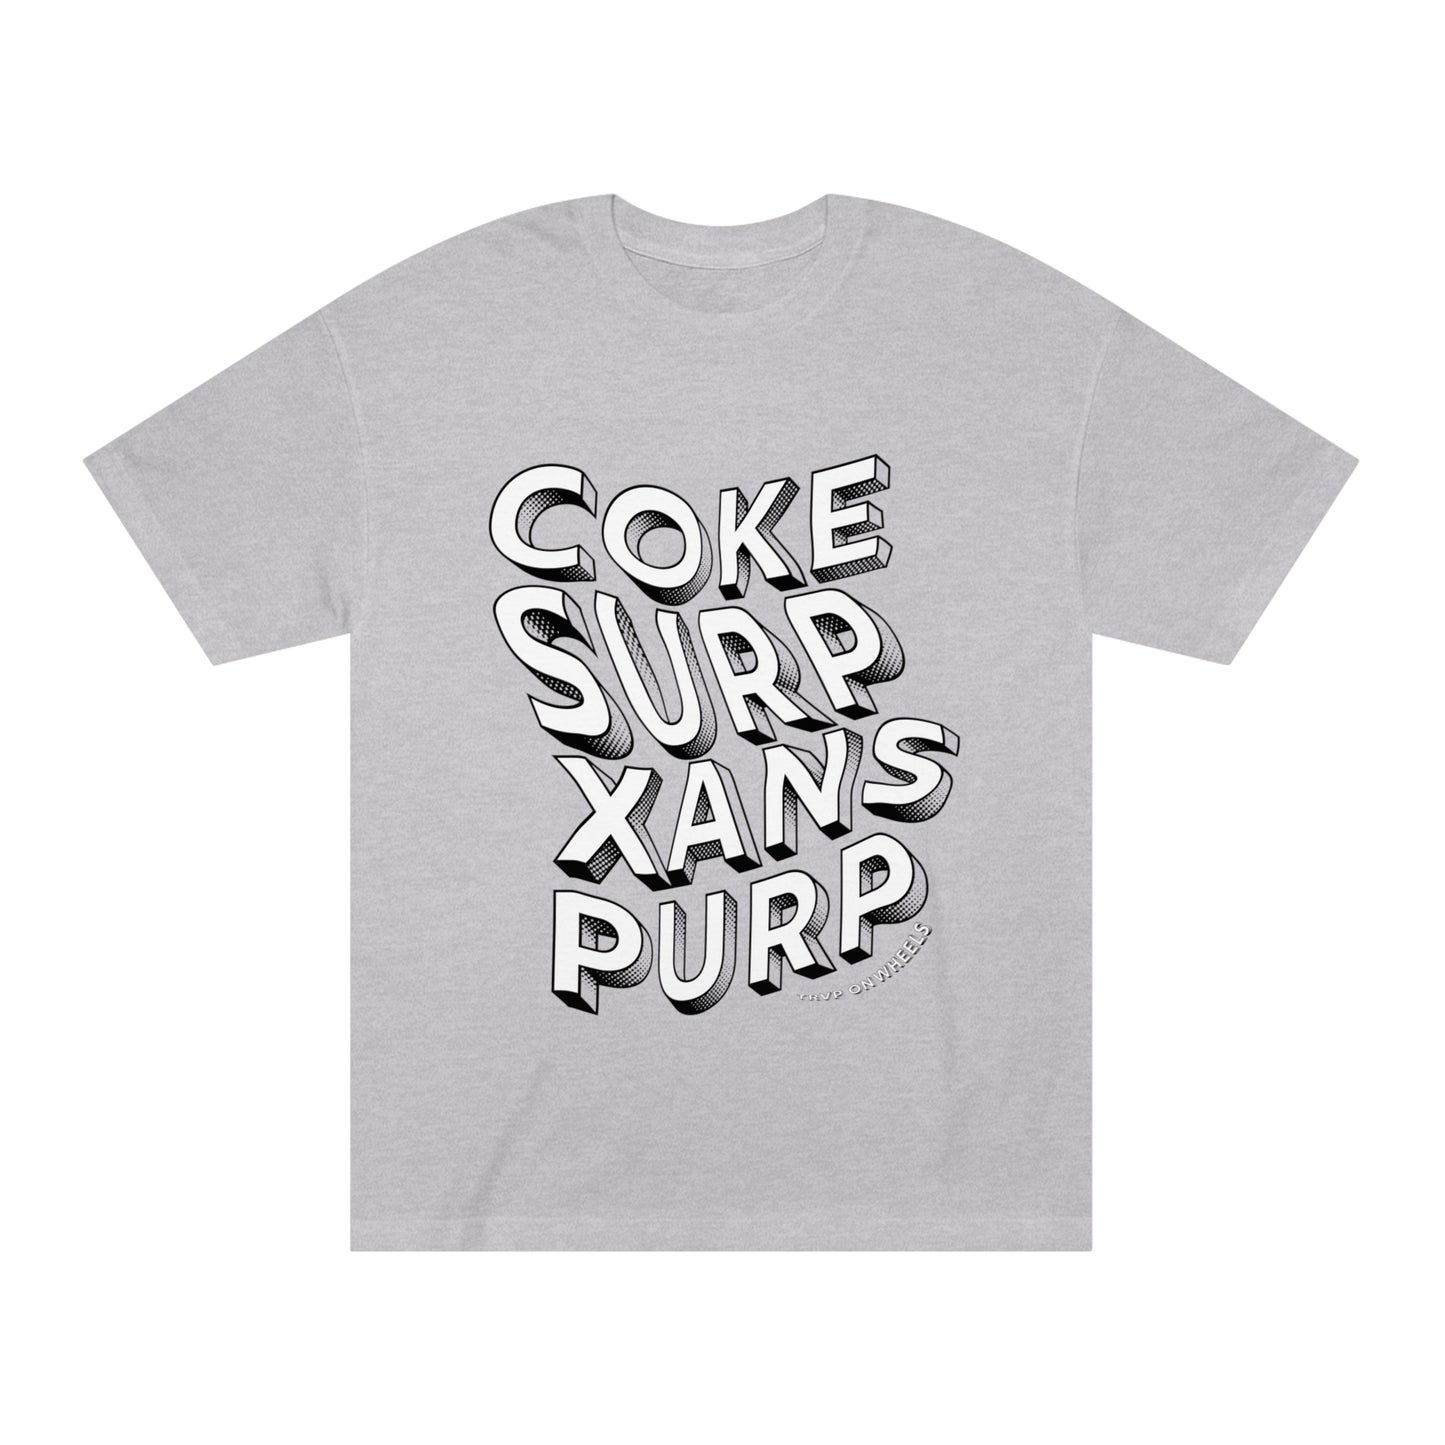 Coke, Surp, Xans, Purp (CSXP)